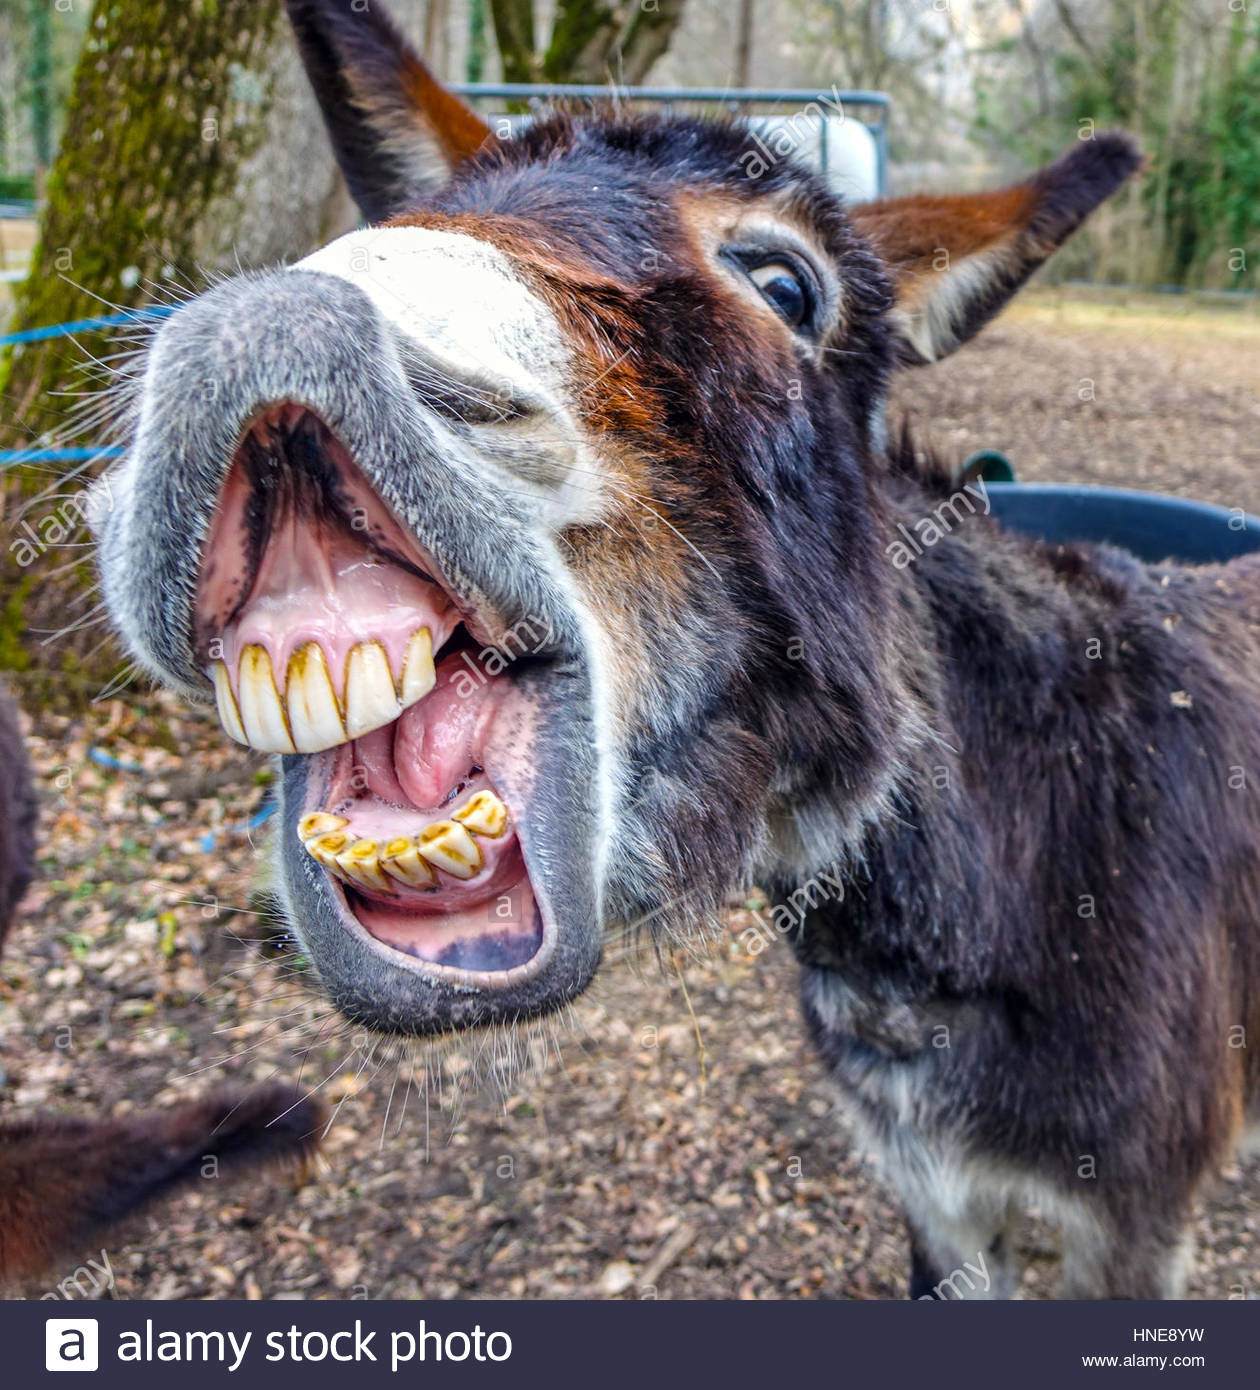 donkey-smiling-showing-big-set-of-teeth-HNE8YW.jpg.